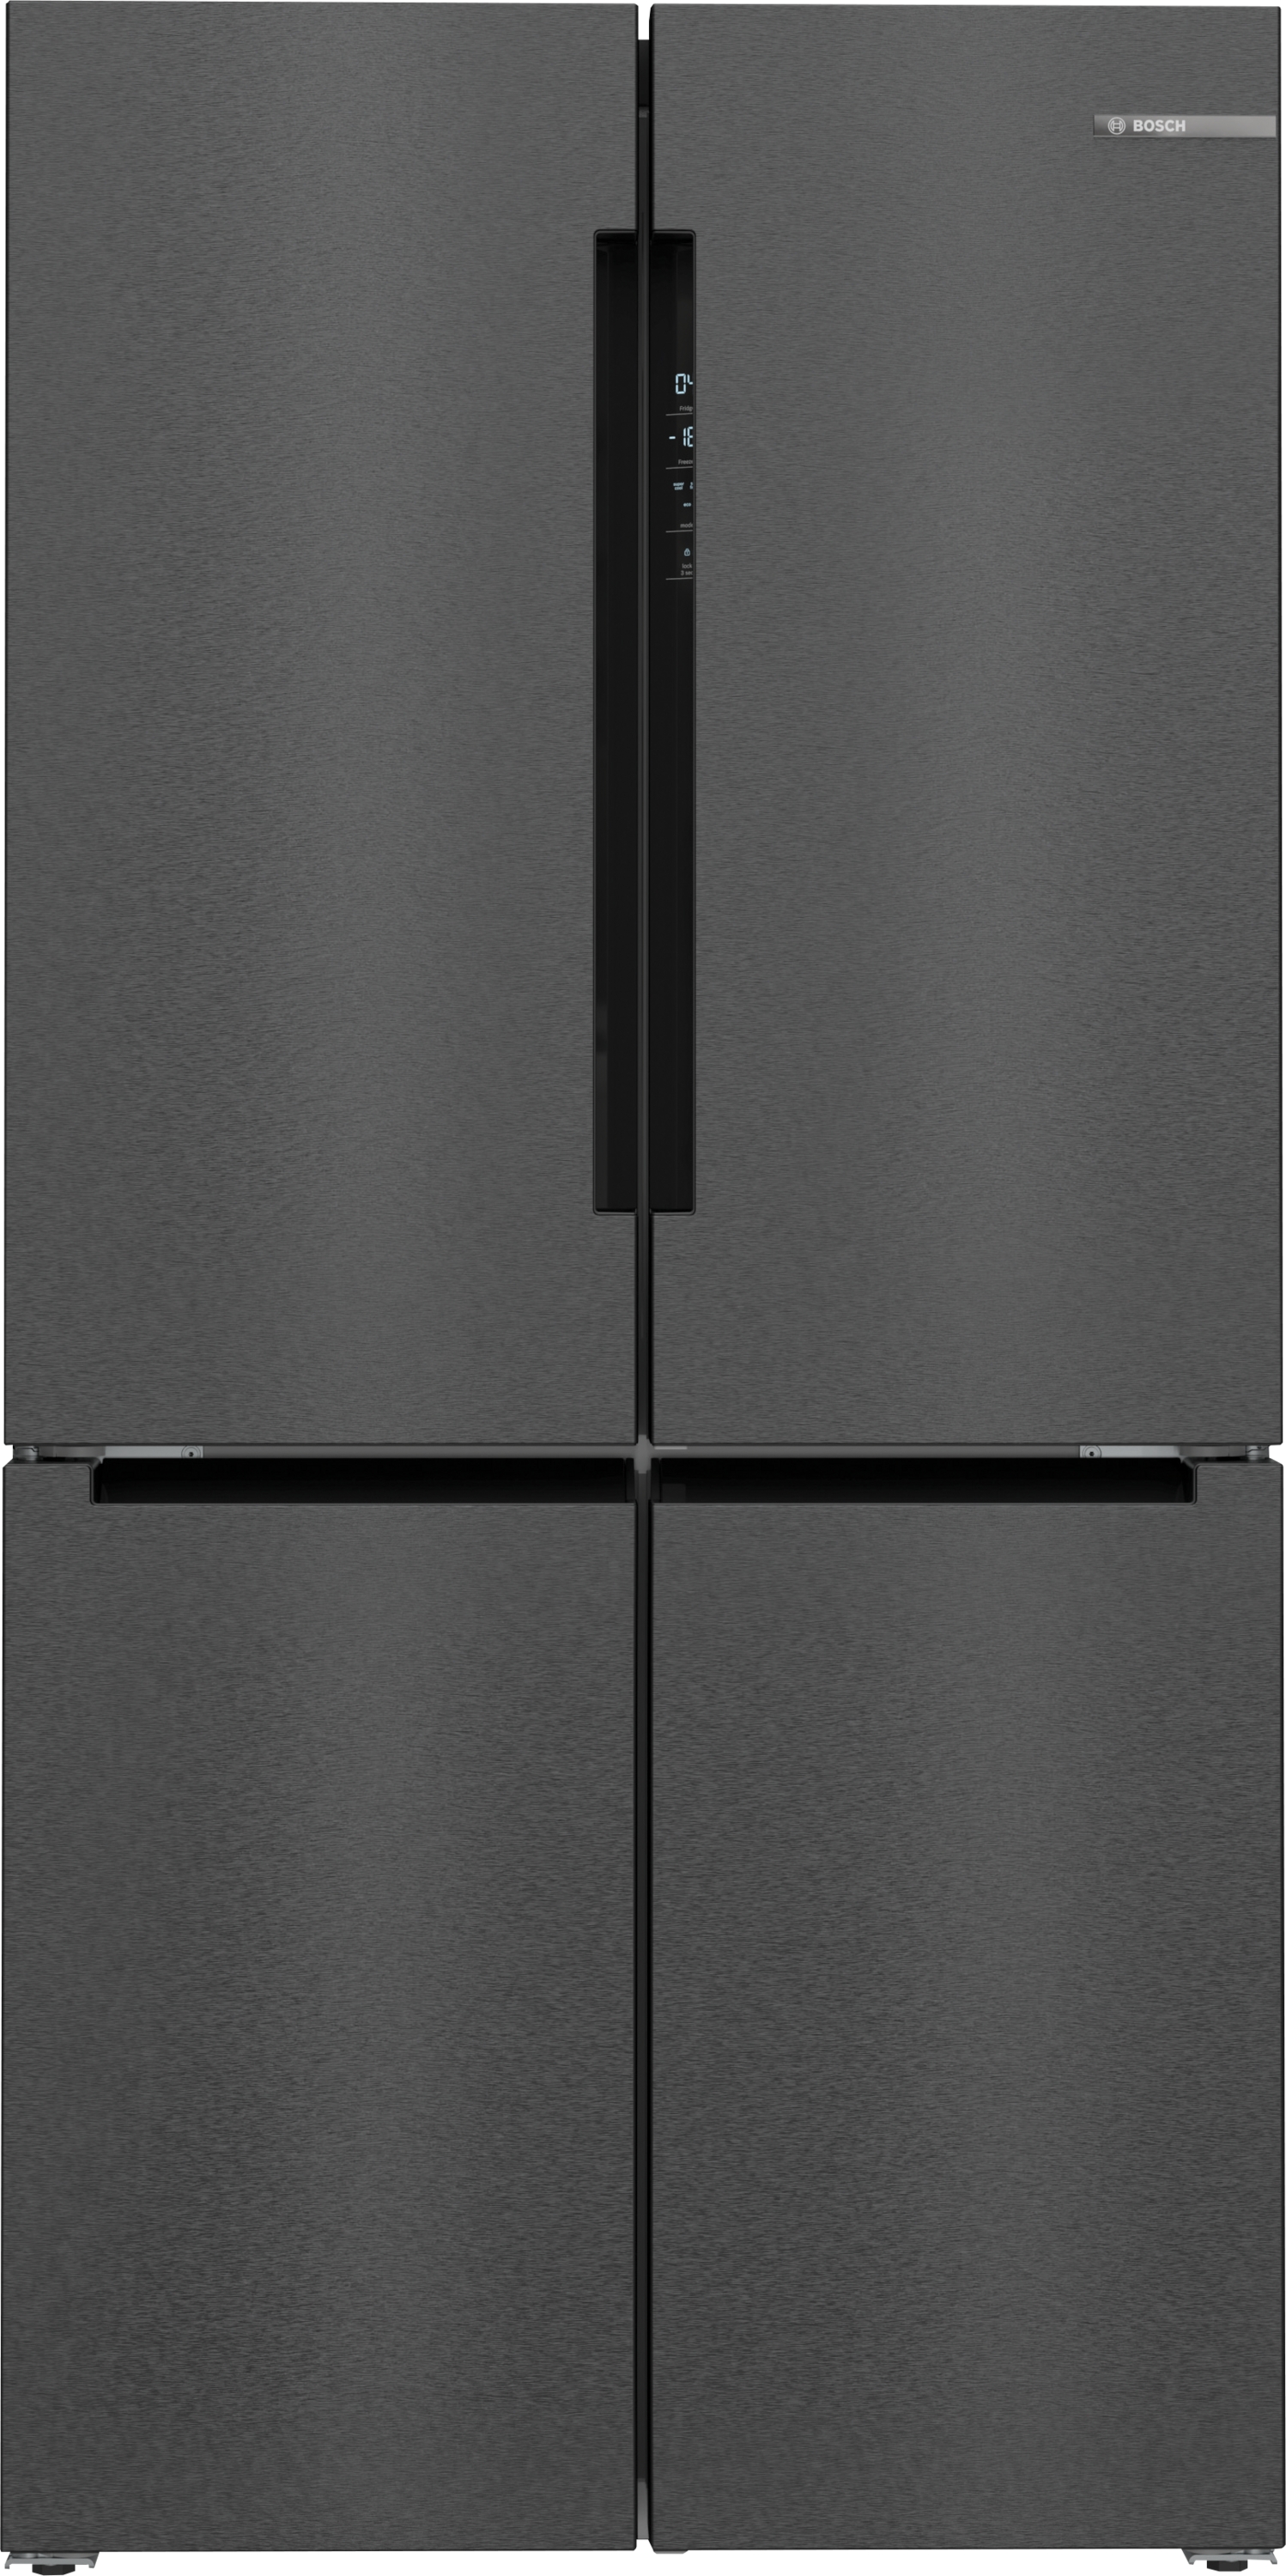 KFN96AXEA Combină frigorifică MultiDoor, 183 x 91 cm, Black stainless steel,seria 6 